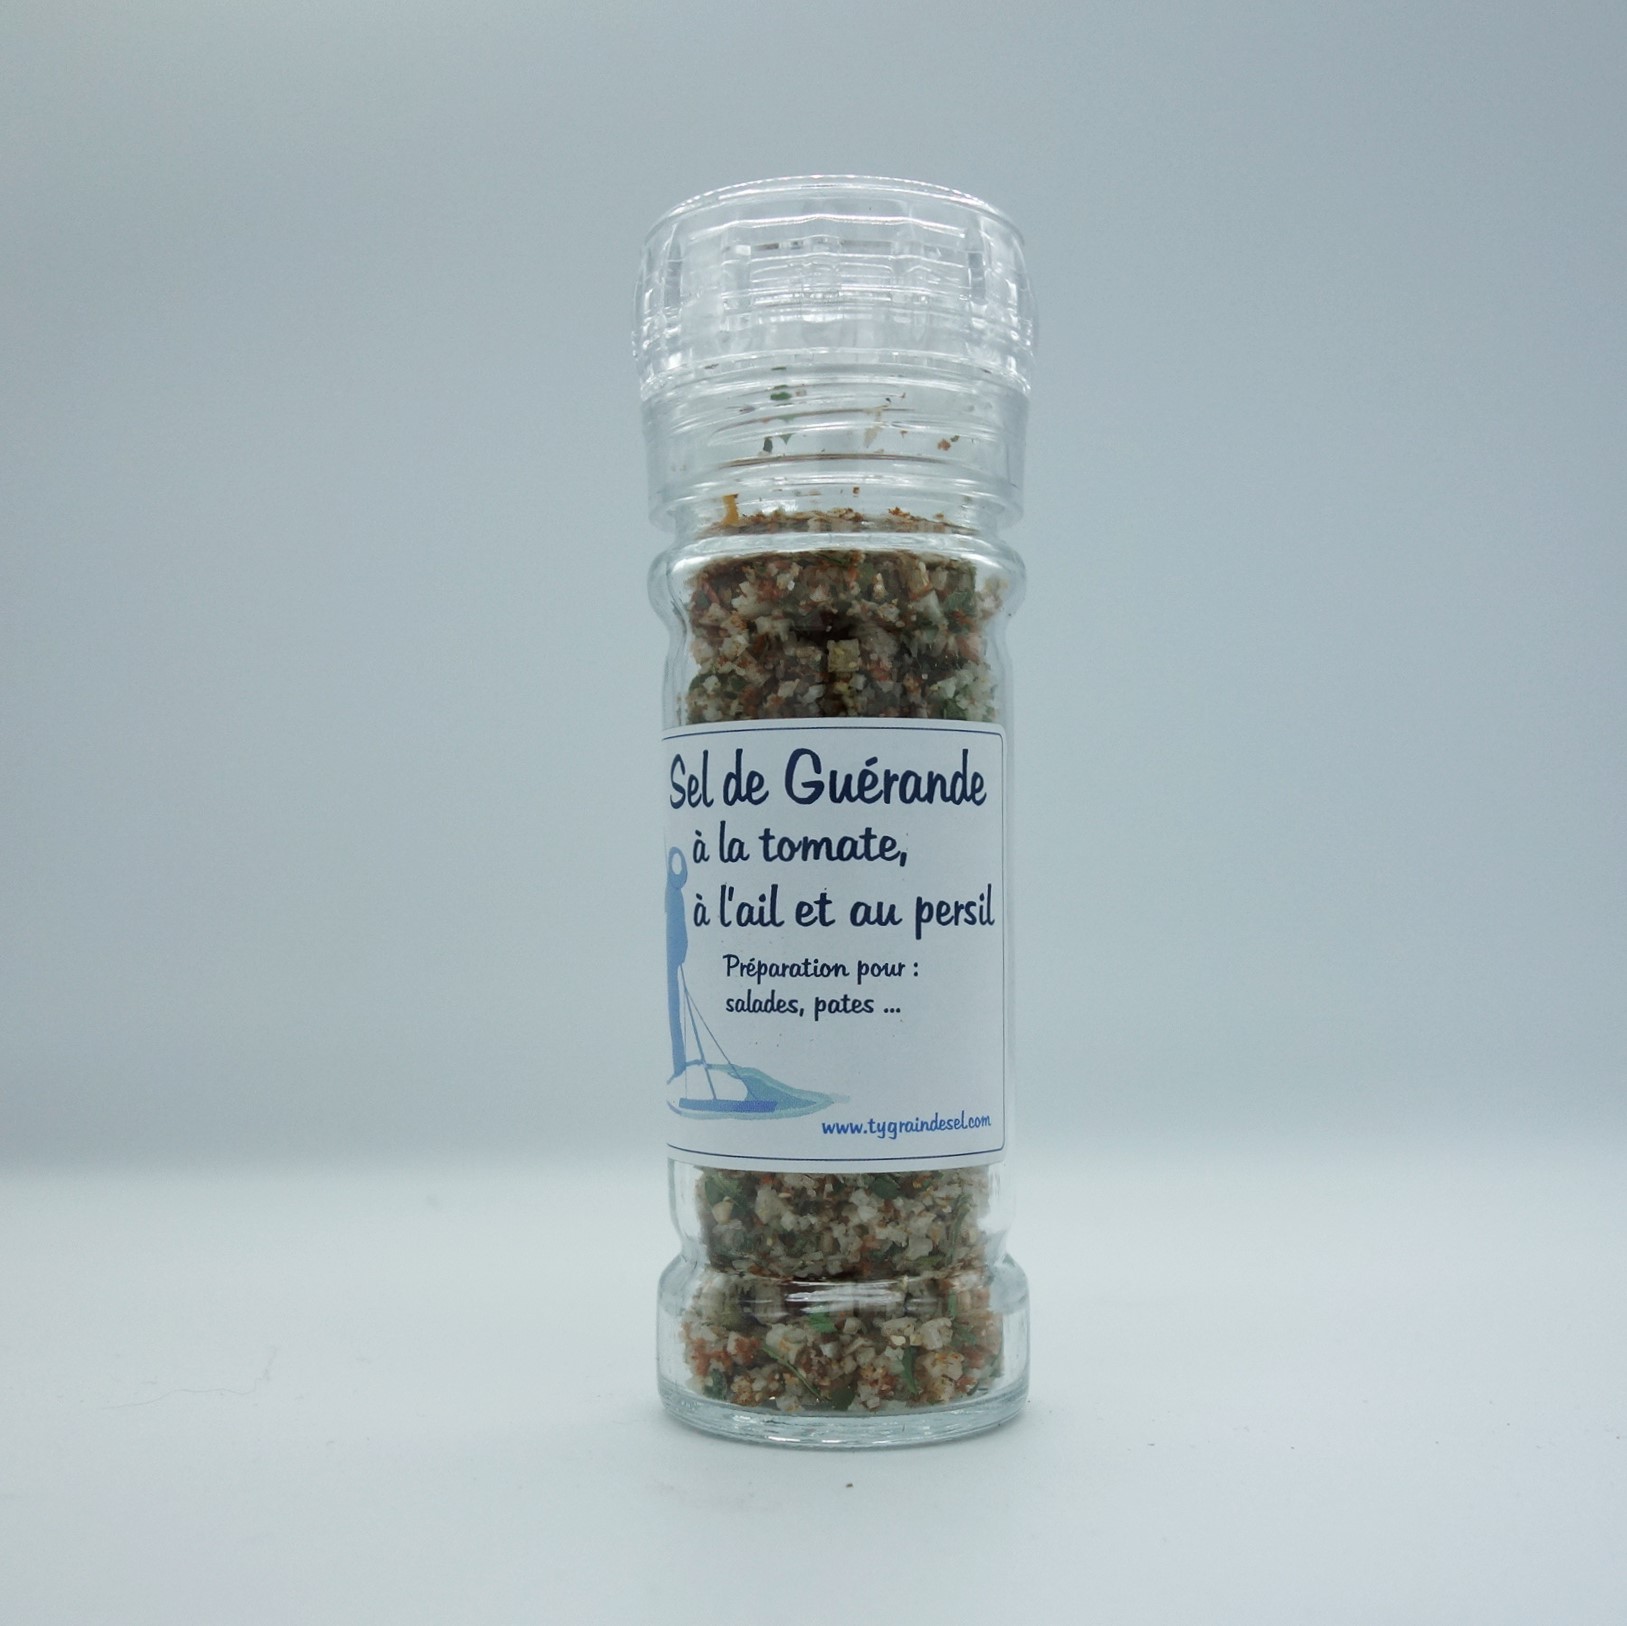 Gros sel de Guérande à l'Ail avec zip REFERMABLE 300g - LE NATURSEL